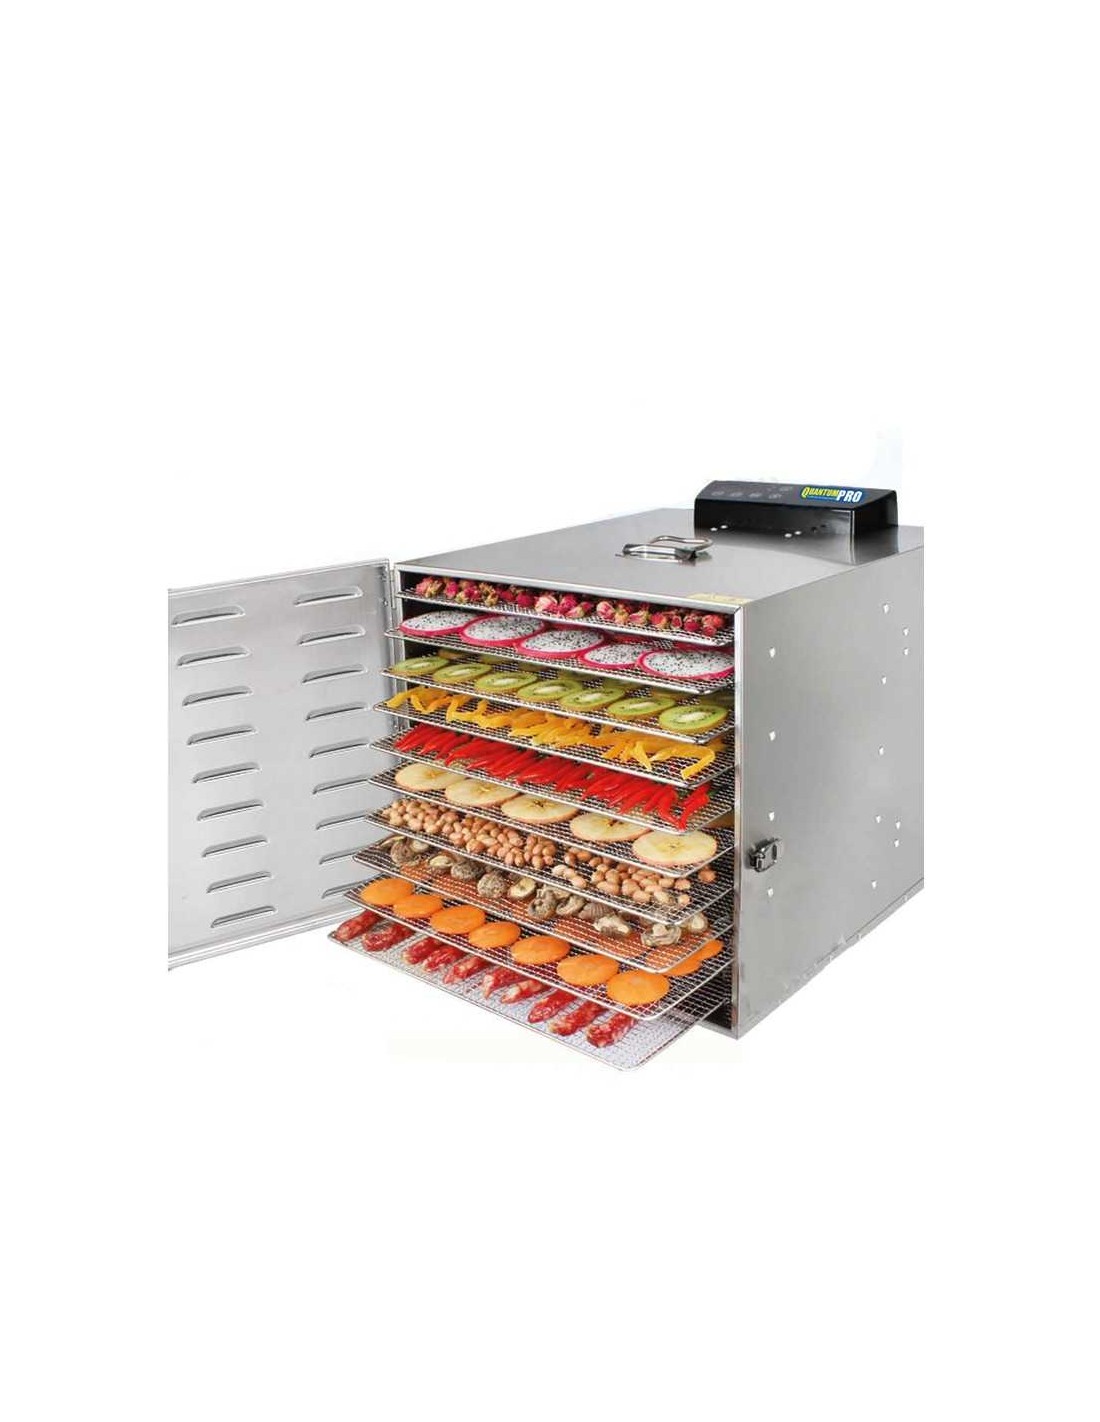 HOMOKUS Deshidratador de alimentos, 9 bandejas de acero inoxidable, máquina  deshidratadora de alimentos grande, área útil de hasta 13.4 pies